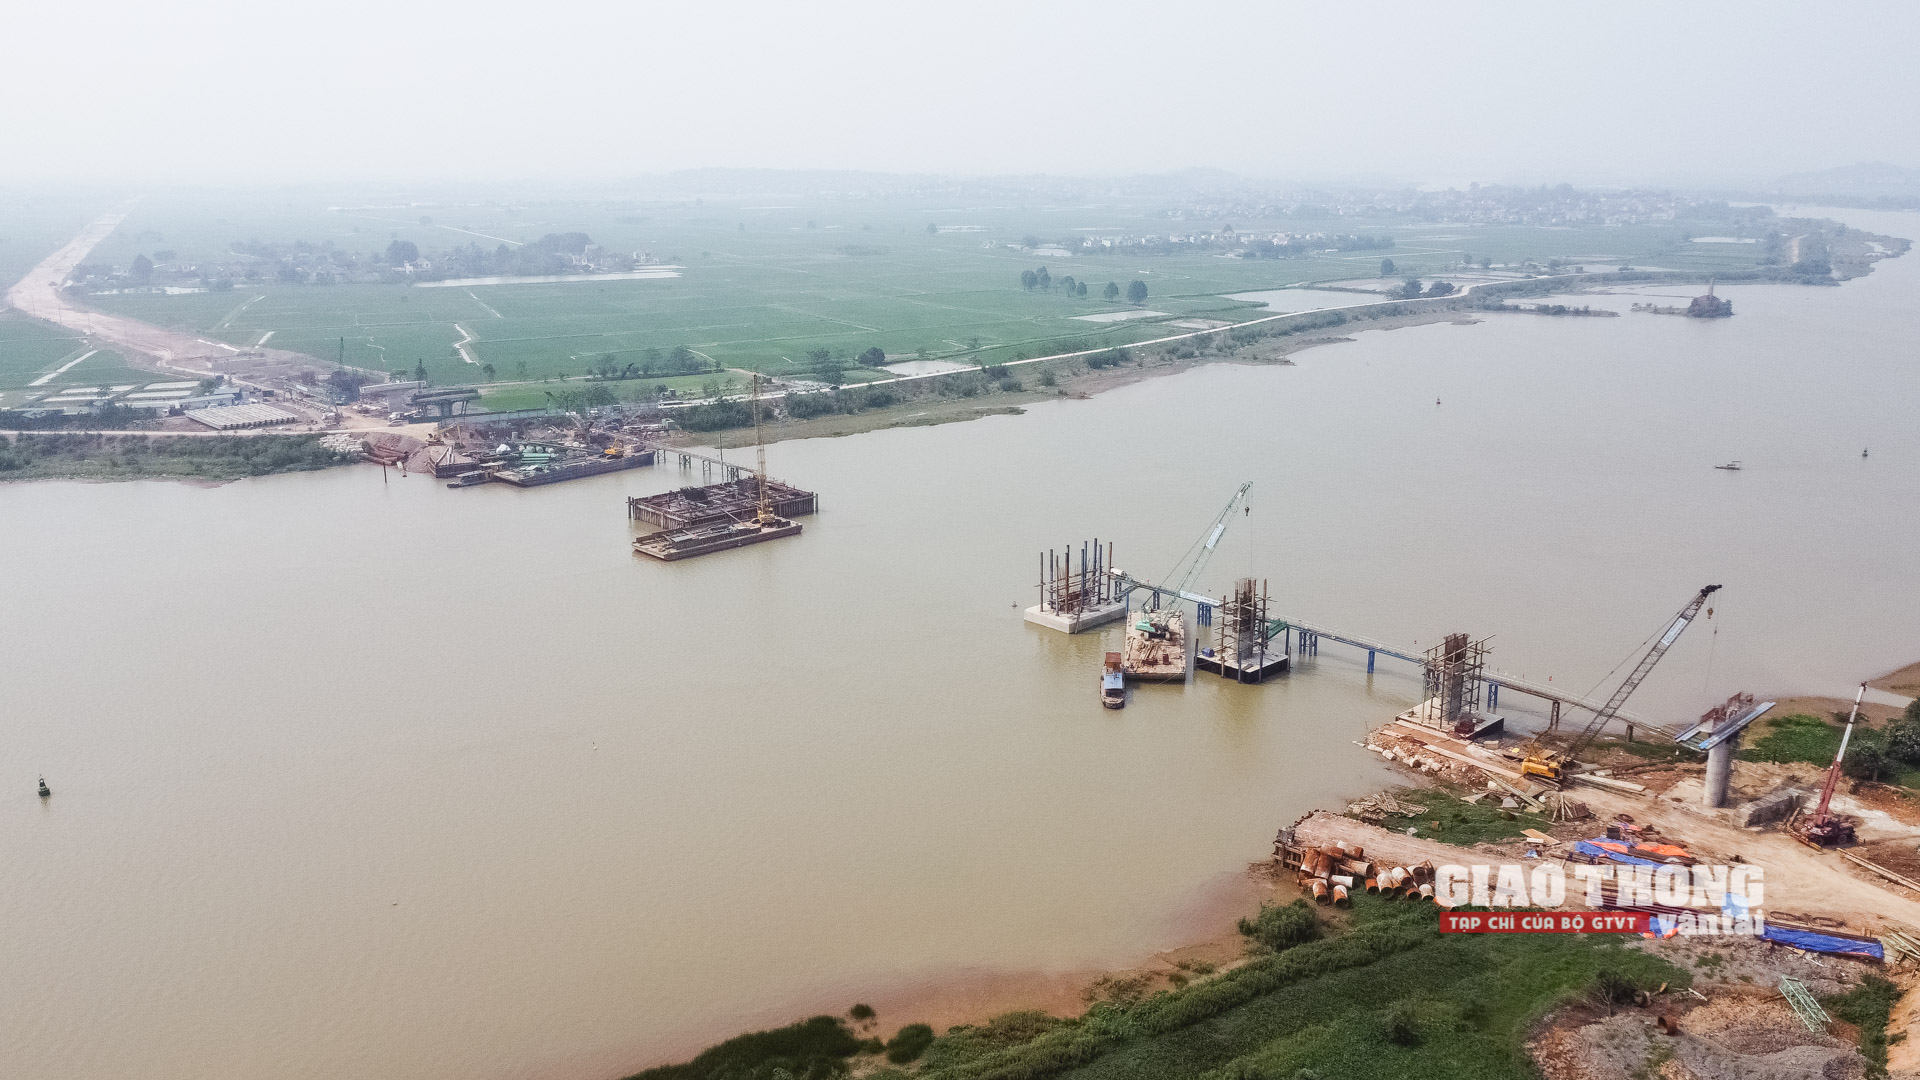 Phóng sự ảnh: Toàn cảnh thi công cầu dây văng đầu tiên ở Bắc Giang vượt sông Thương - Ảnh 4.